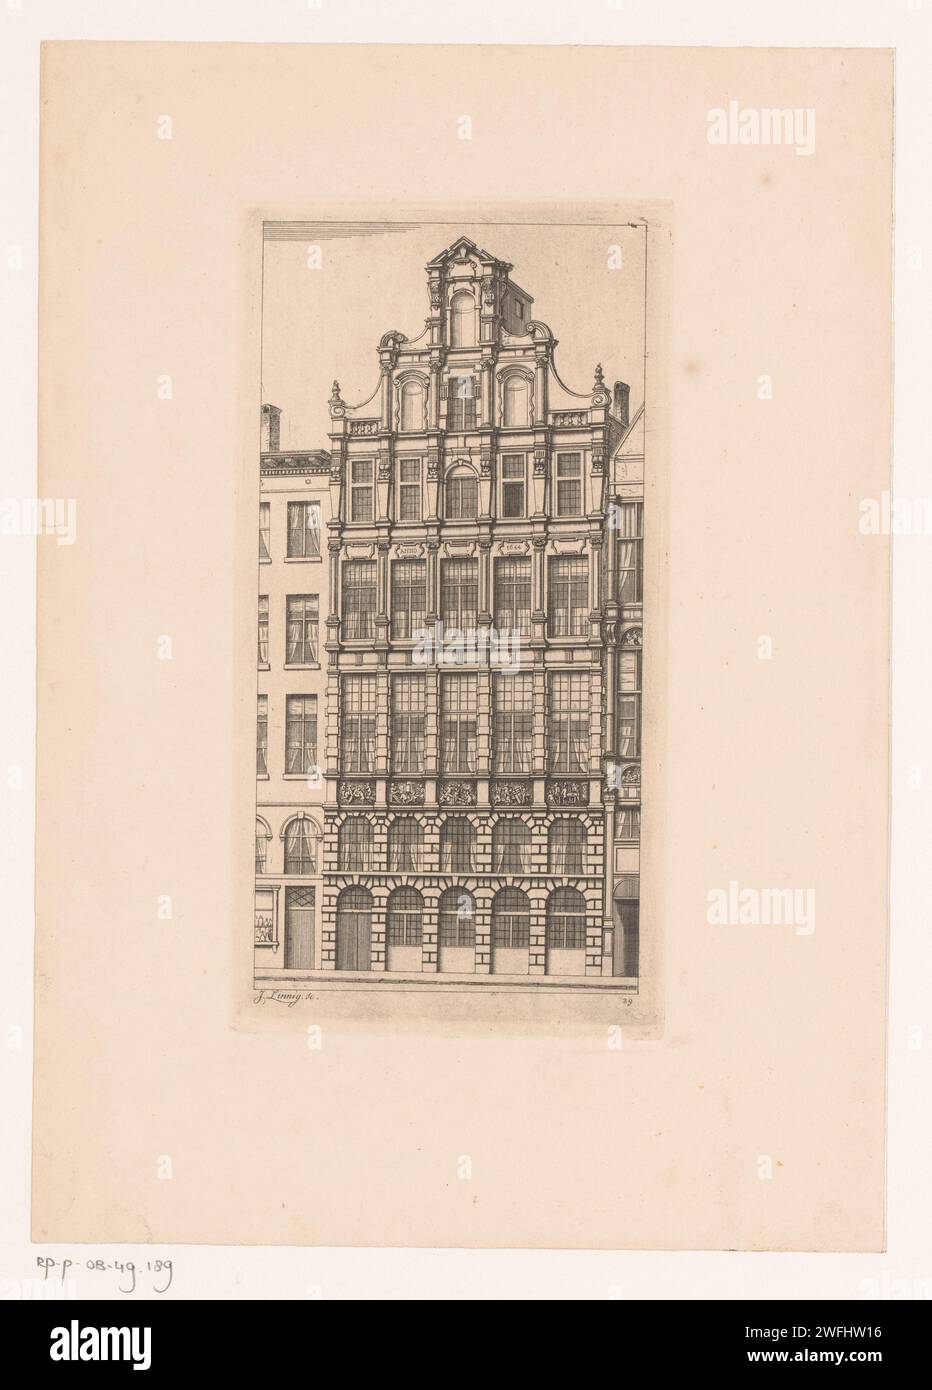 Façade de la Gildehuis de Timmers sur la Grote Markt à Anvers, Jean Théodore Joseph Linnig, 1868 estampes Anvers sur papier gravure rue. Façade (de maison ou bâtiment) Grand marché Banque D'Images